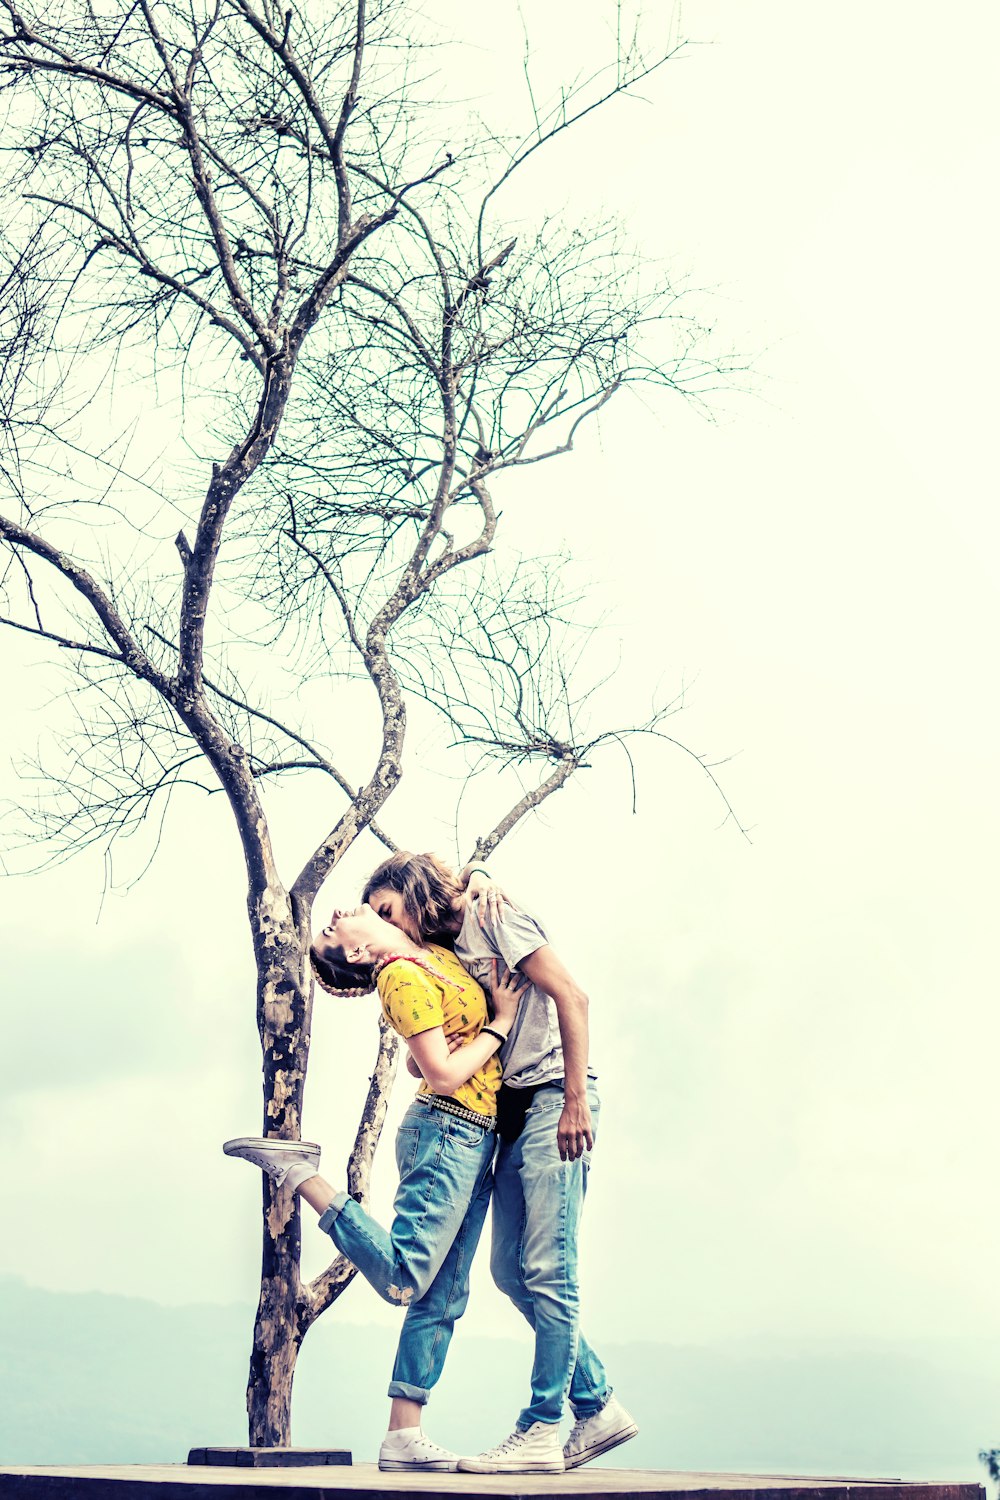 Mann und Frau küssen sich unter blattlosem Baum